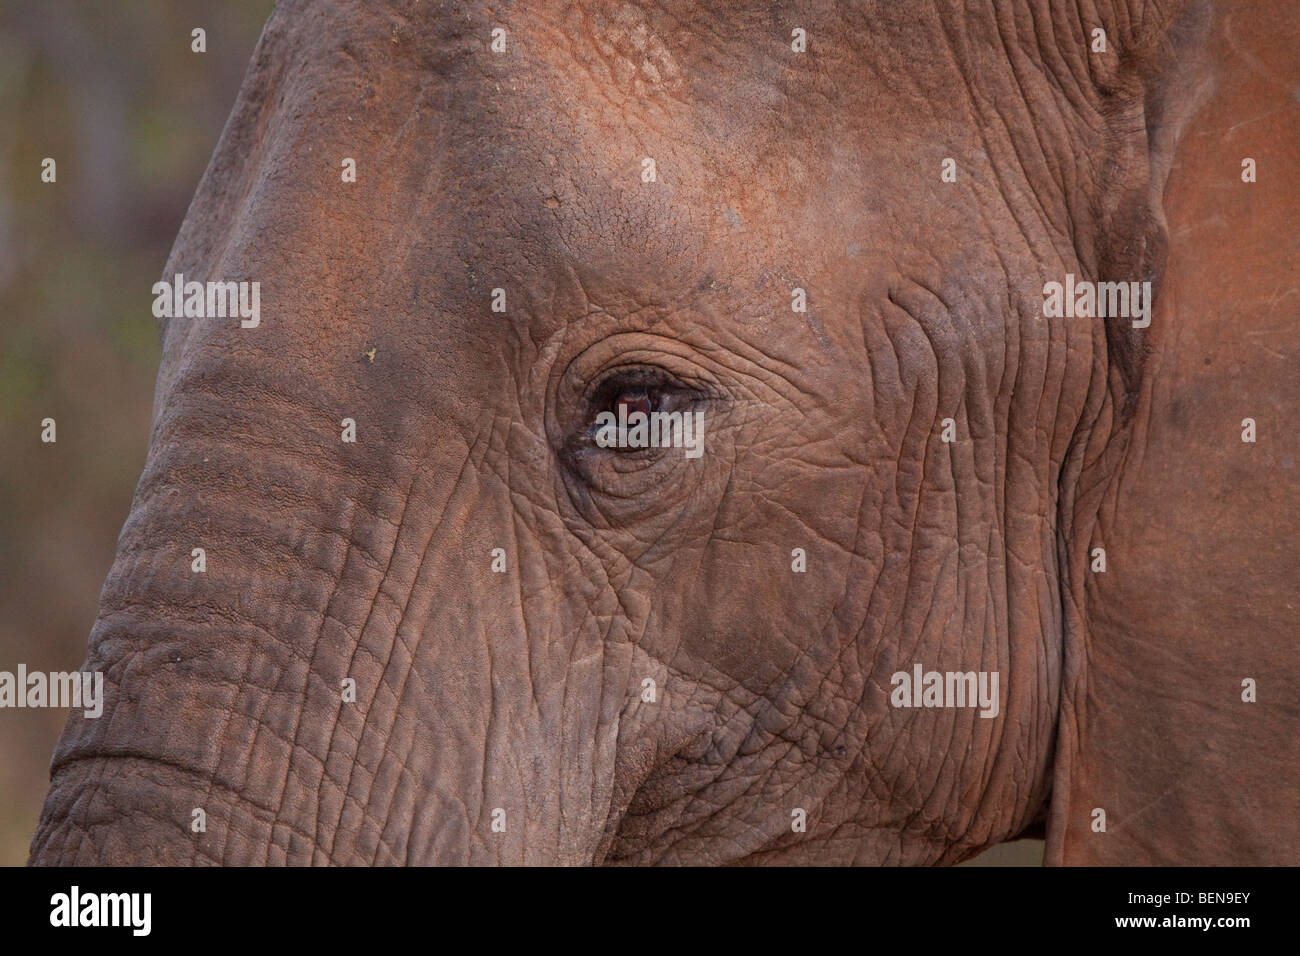 L'éléphant africain (Loxodonta Africana). Détail du visage. Juin 2009, l'hiver. Bothabelo bed and breakfast, Parc National Kruger. L'Afrique du Sud. Banque D'Images